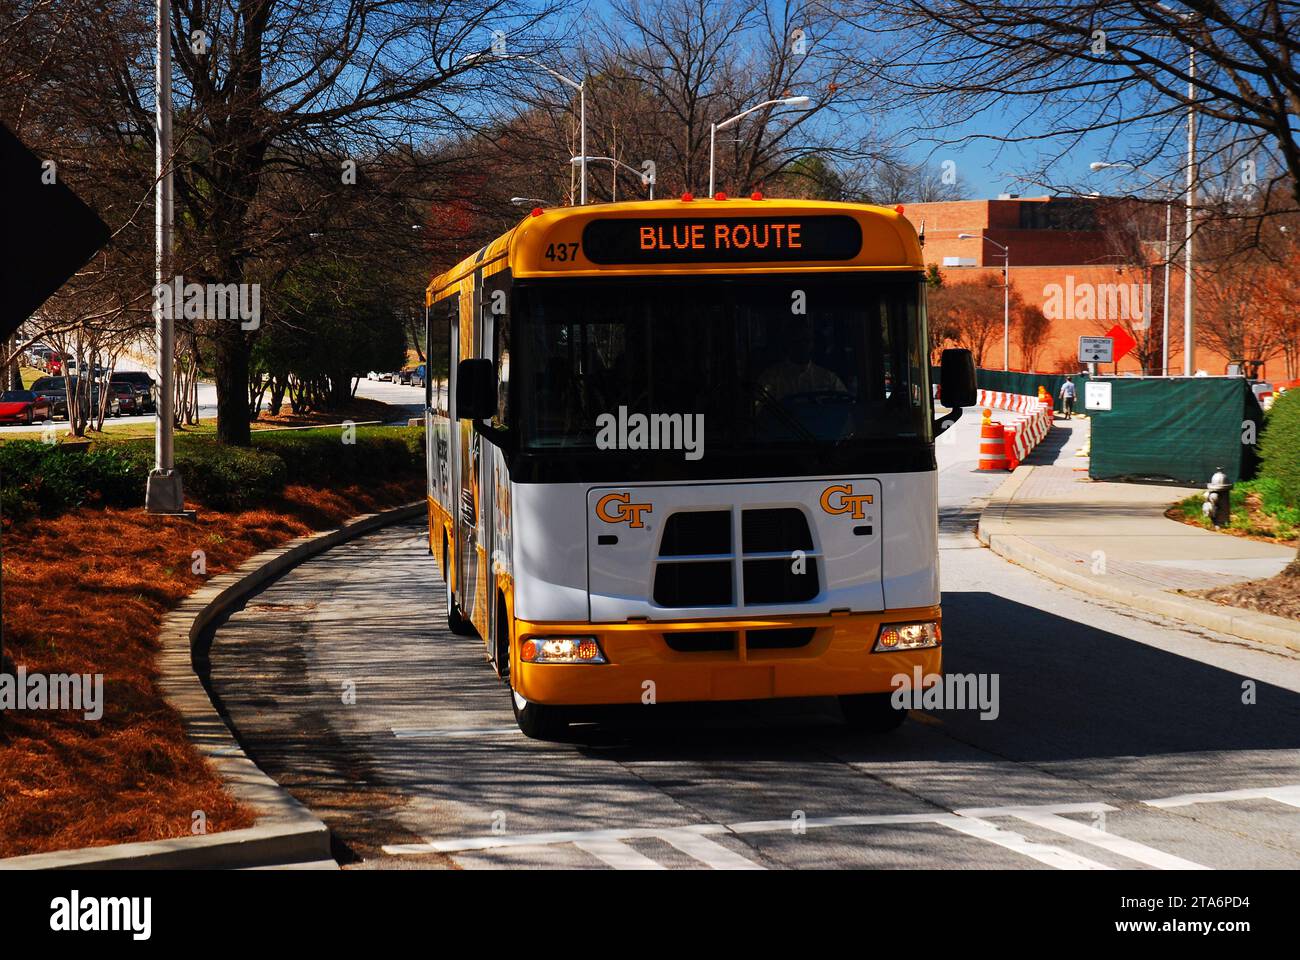 Debido al gran tamaño del campus, muchas universidades, incluyendo Georgia Tech, aquí, usan autobuses para llevar a los estudiantes a sus clases Foto de stock